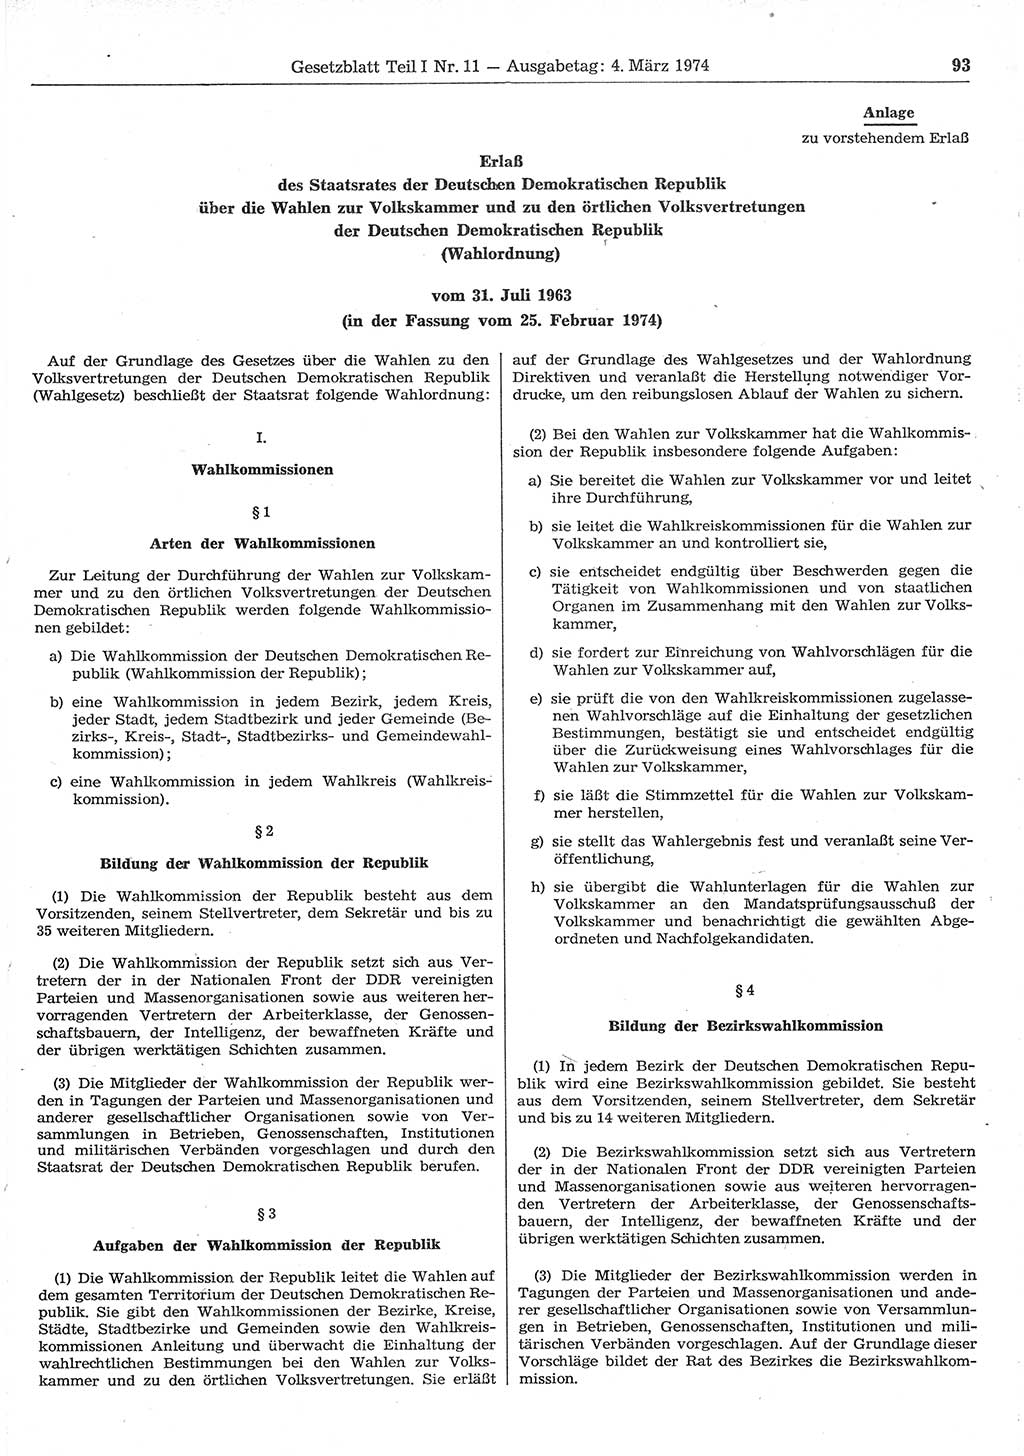 Gesetzblatt (GBl.) der Deutschen Demokratischen Republik (DDR) Teil Ⅰ 1974, Seite 93 (GBl. DDR Ⅰ 1974, S. 93)